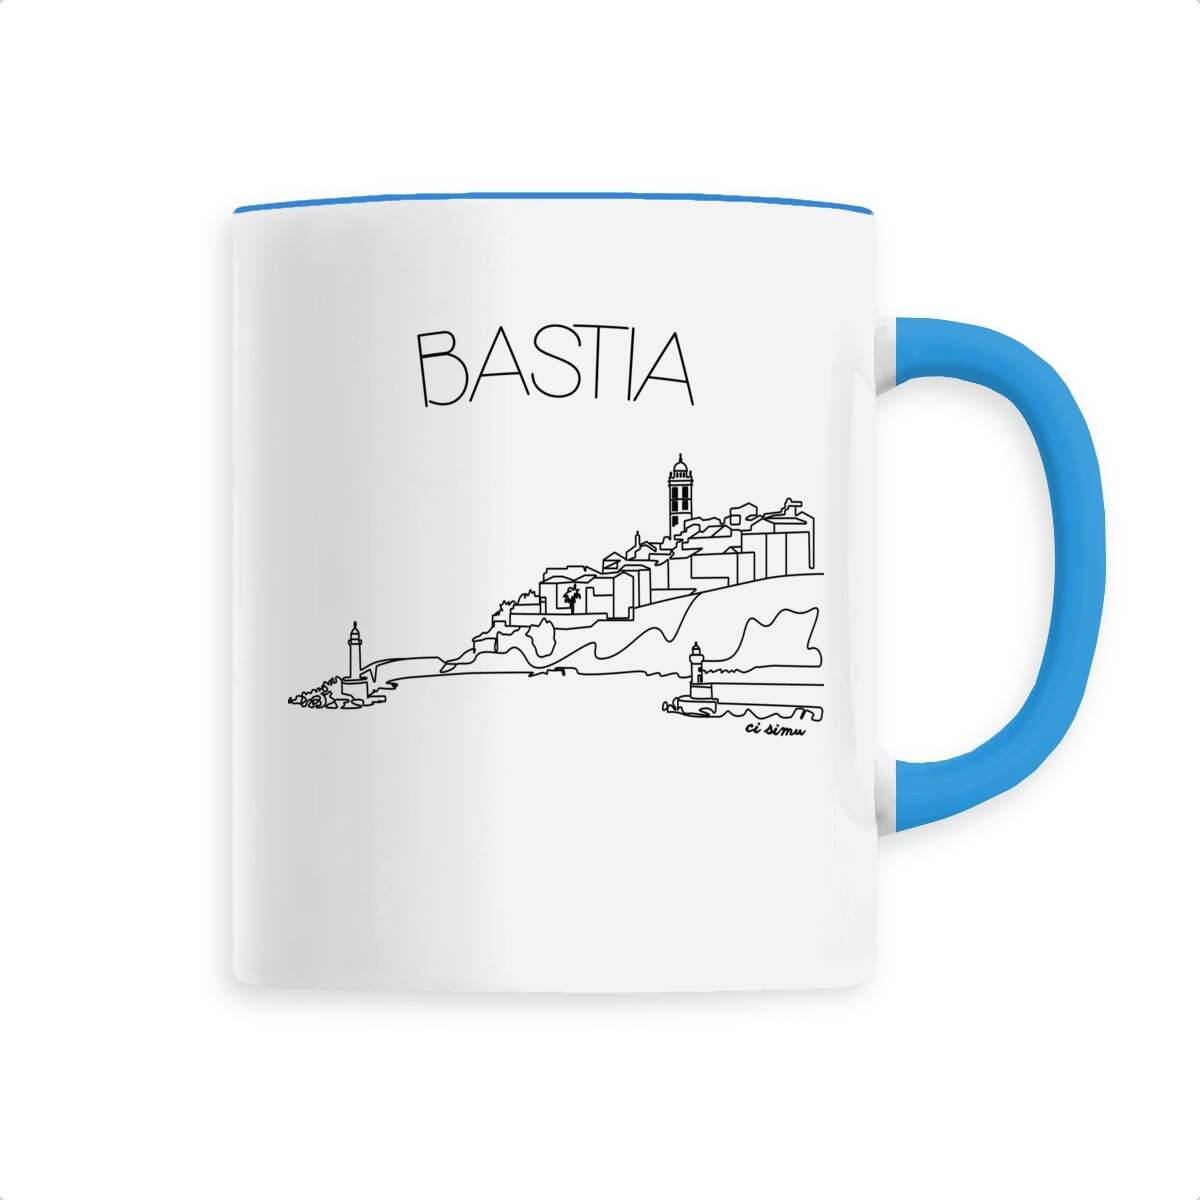 Mug de Bastia